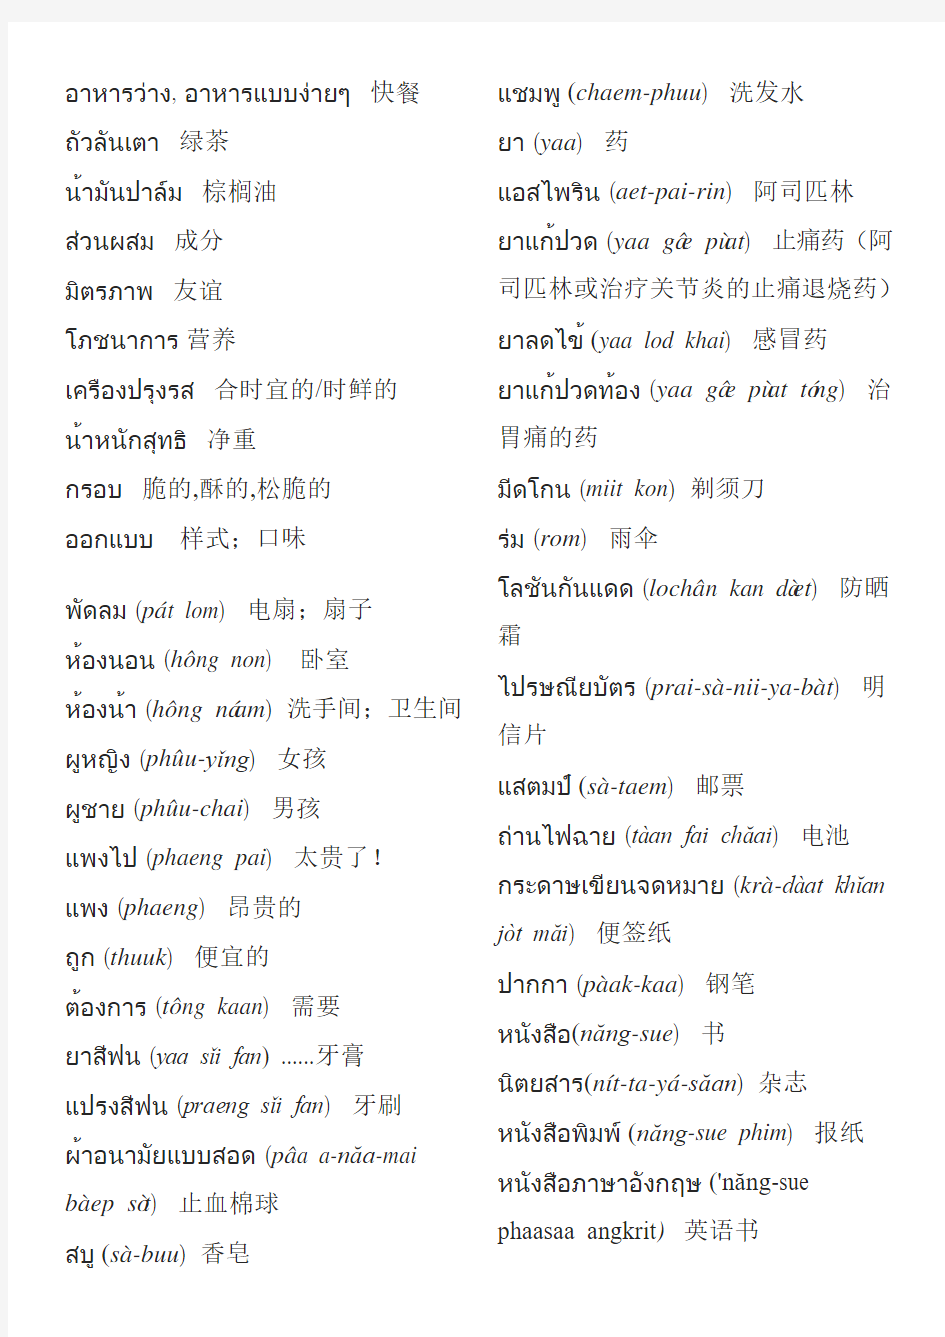 泰语食物词汇分类——实用!